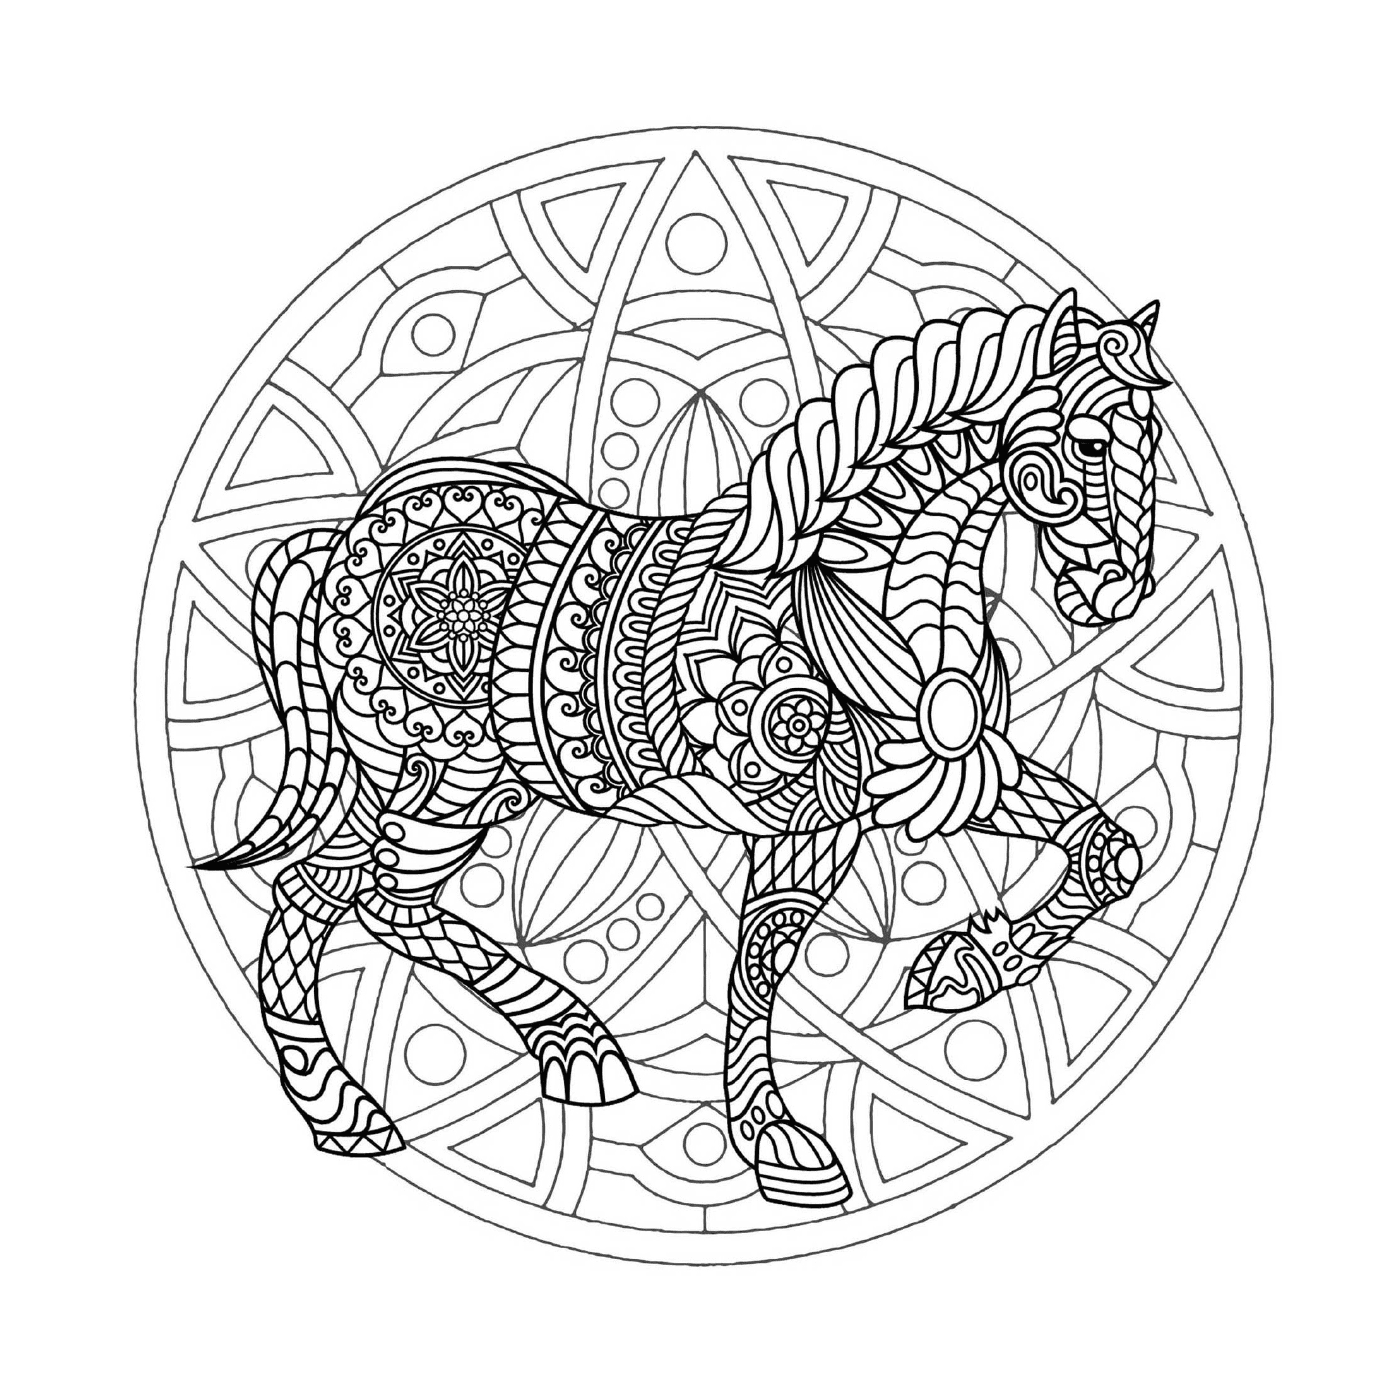  Мандала - ходьба лошади 